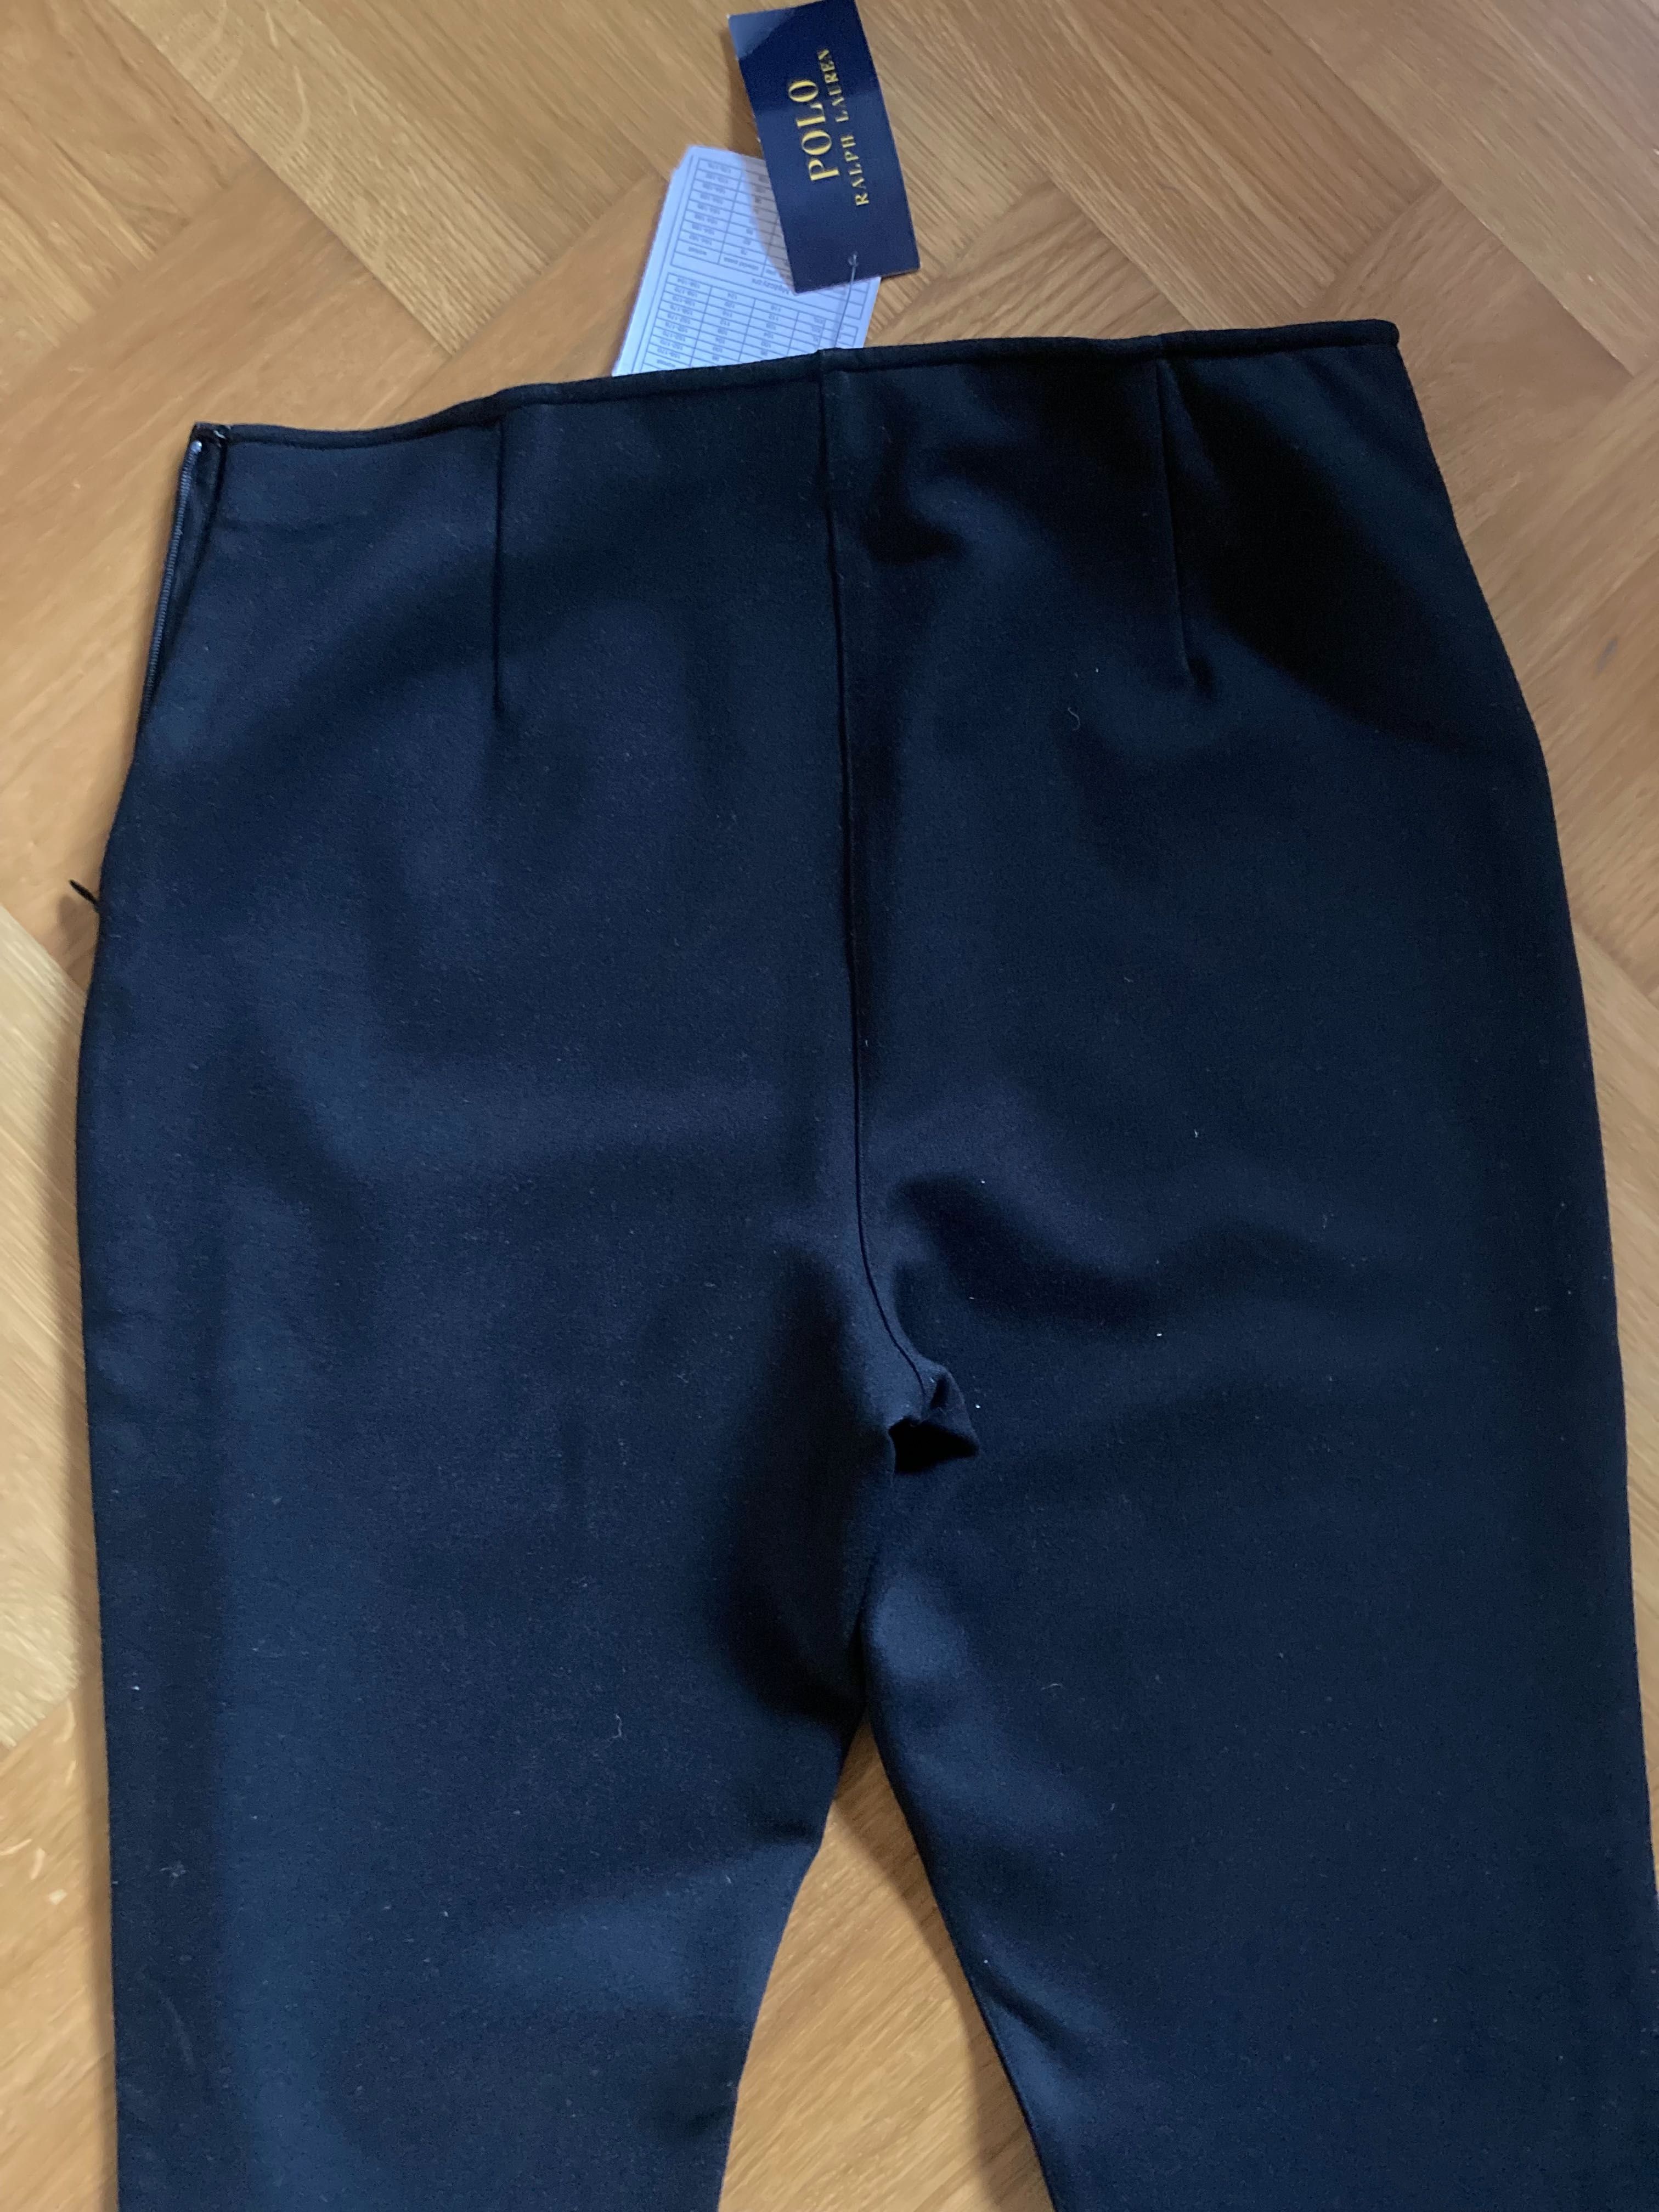 Spodnie czarne cygaretki Polo Ralph Lauren nowe rozmiar 10 (38)